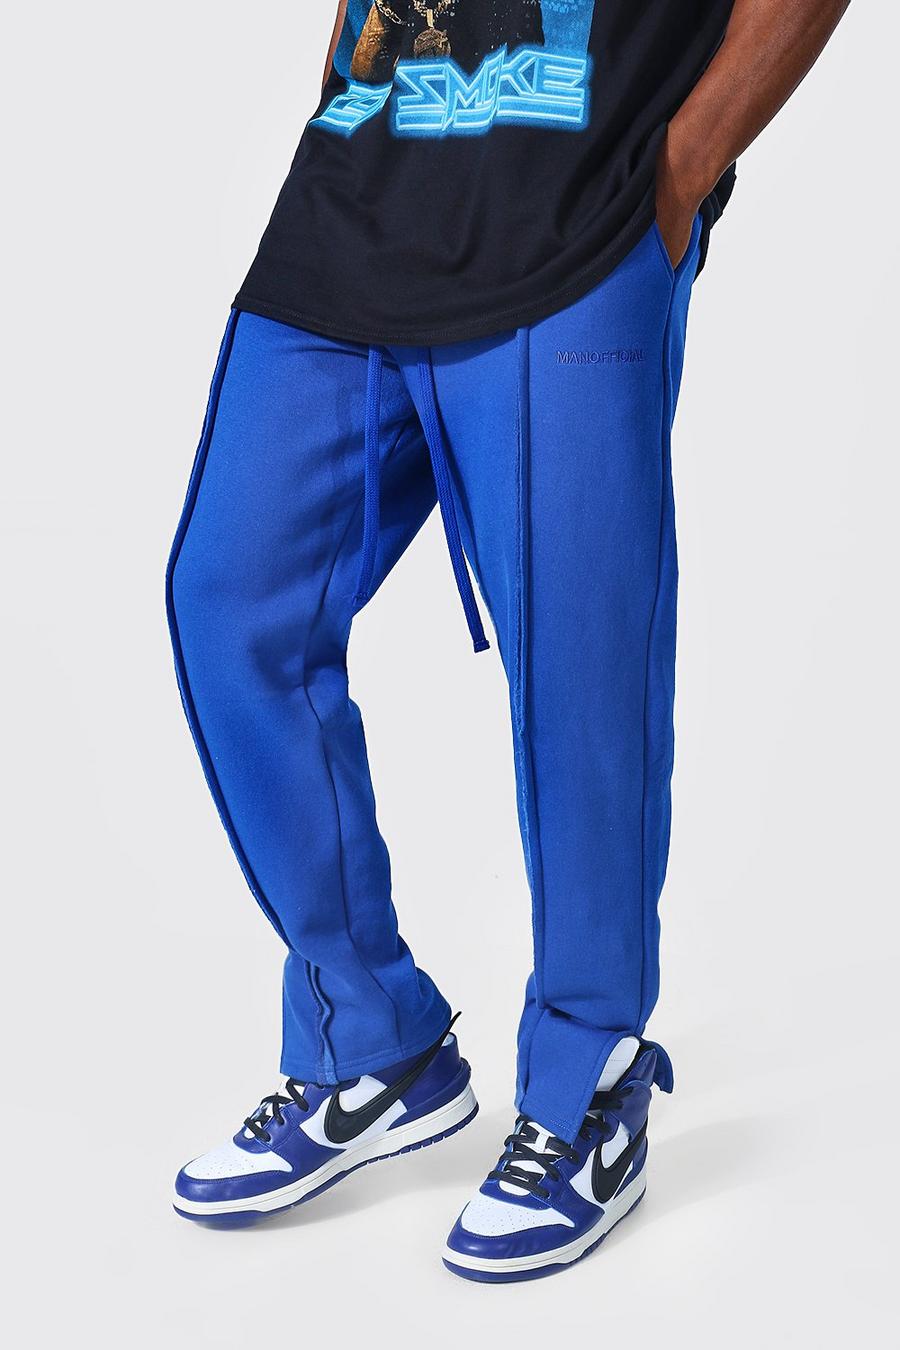 Lockere Man Official Jogginghose mit geteiltem Saum, Cobalt blue image number 1